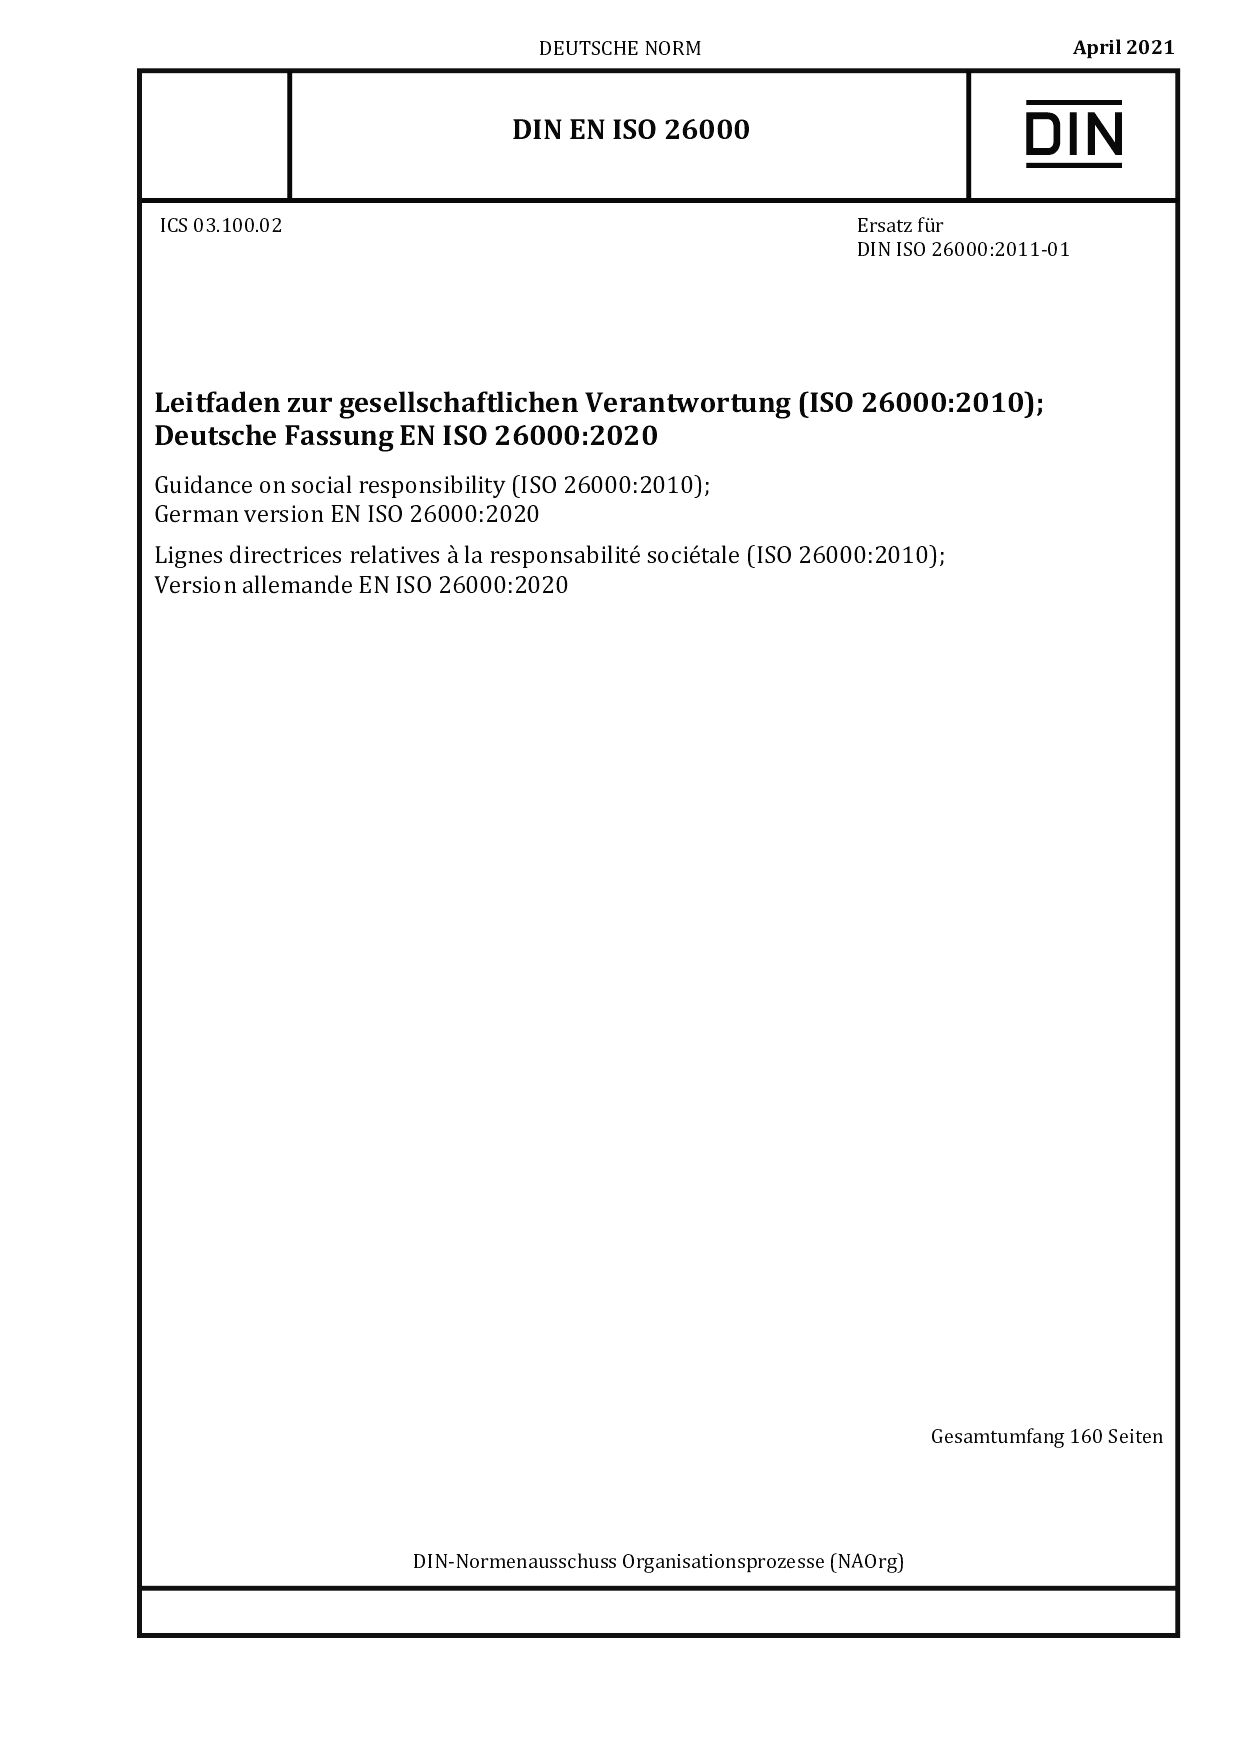 DIN EN ISO 26000:2021封面图